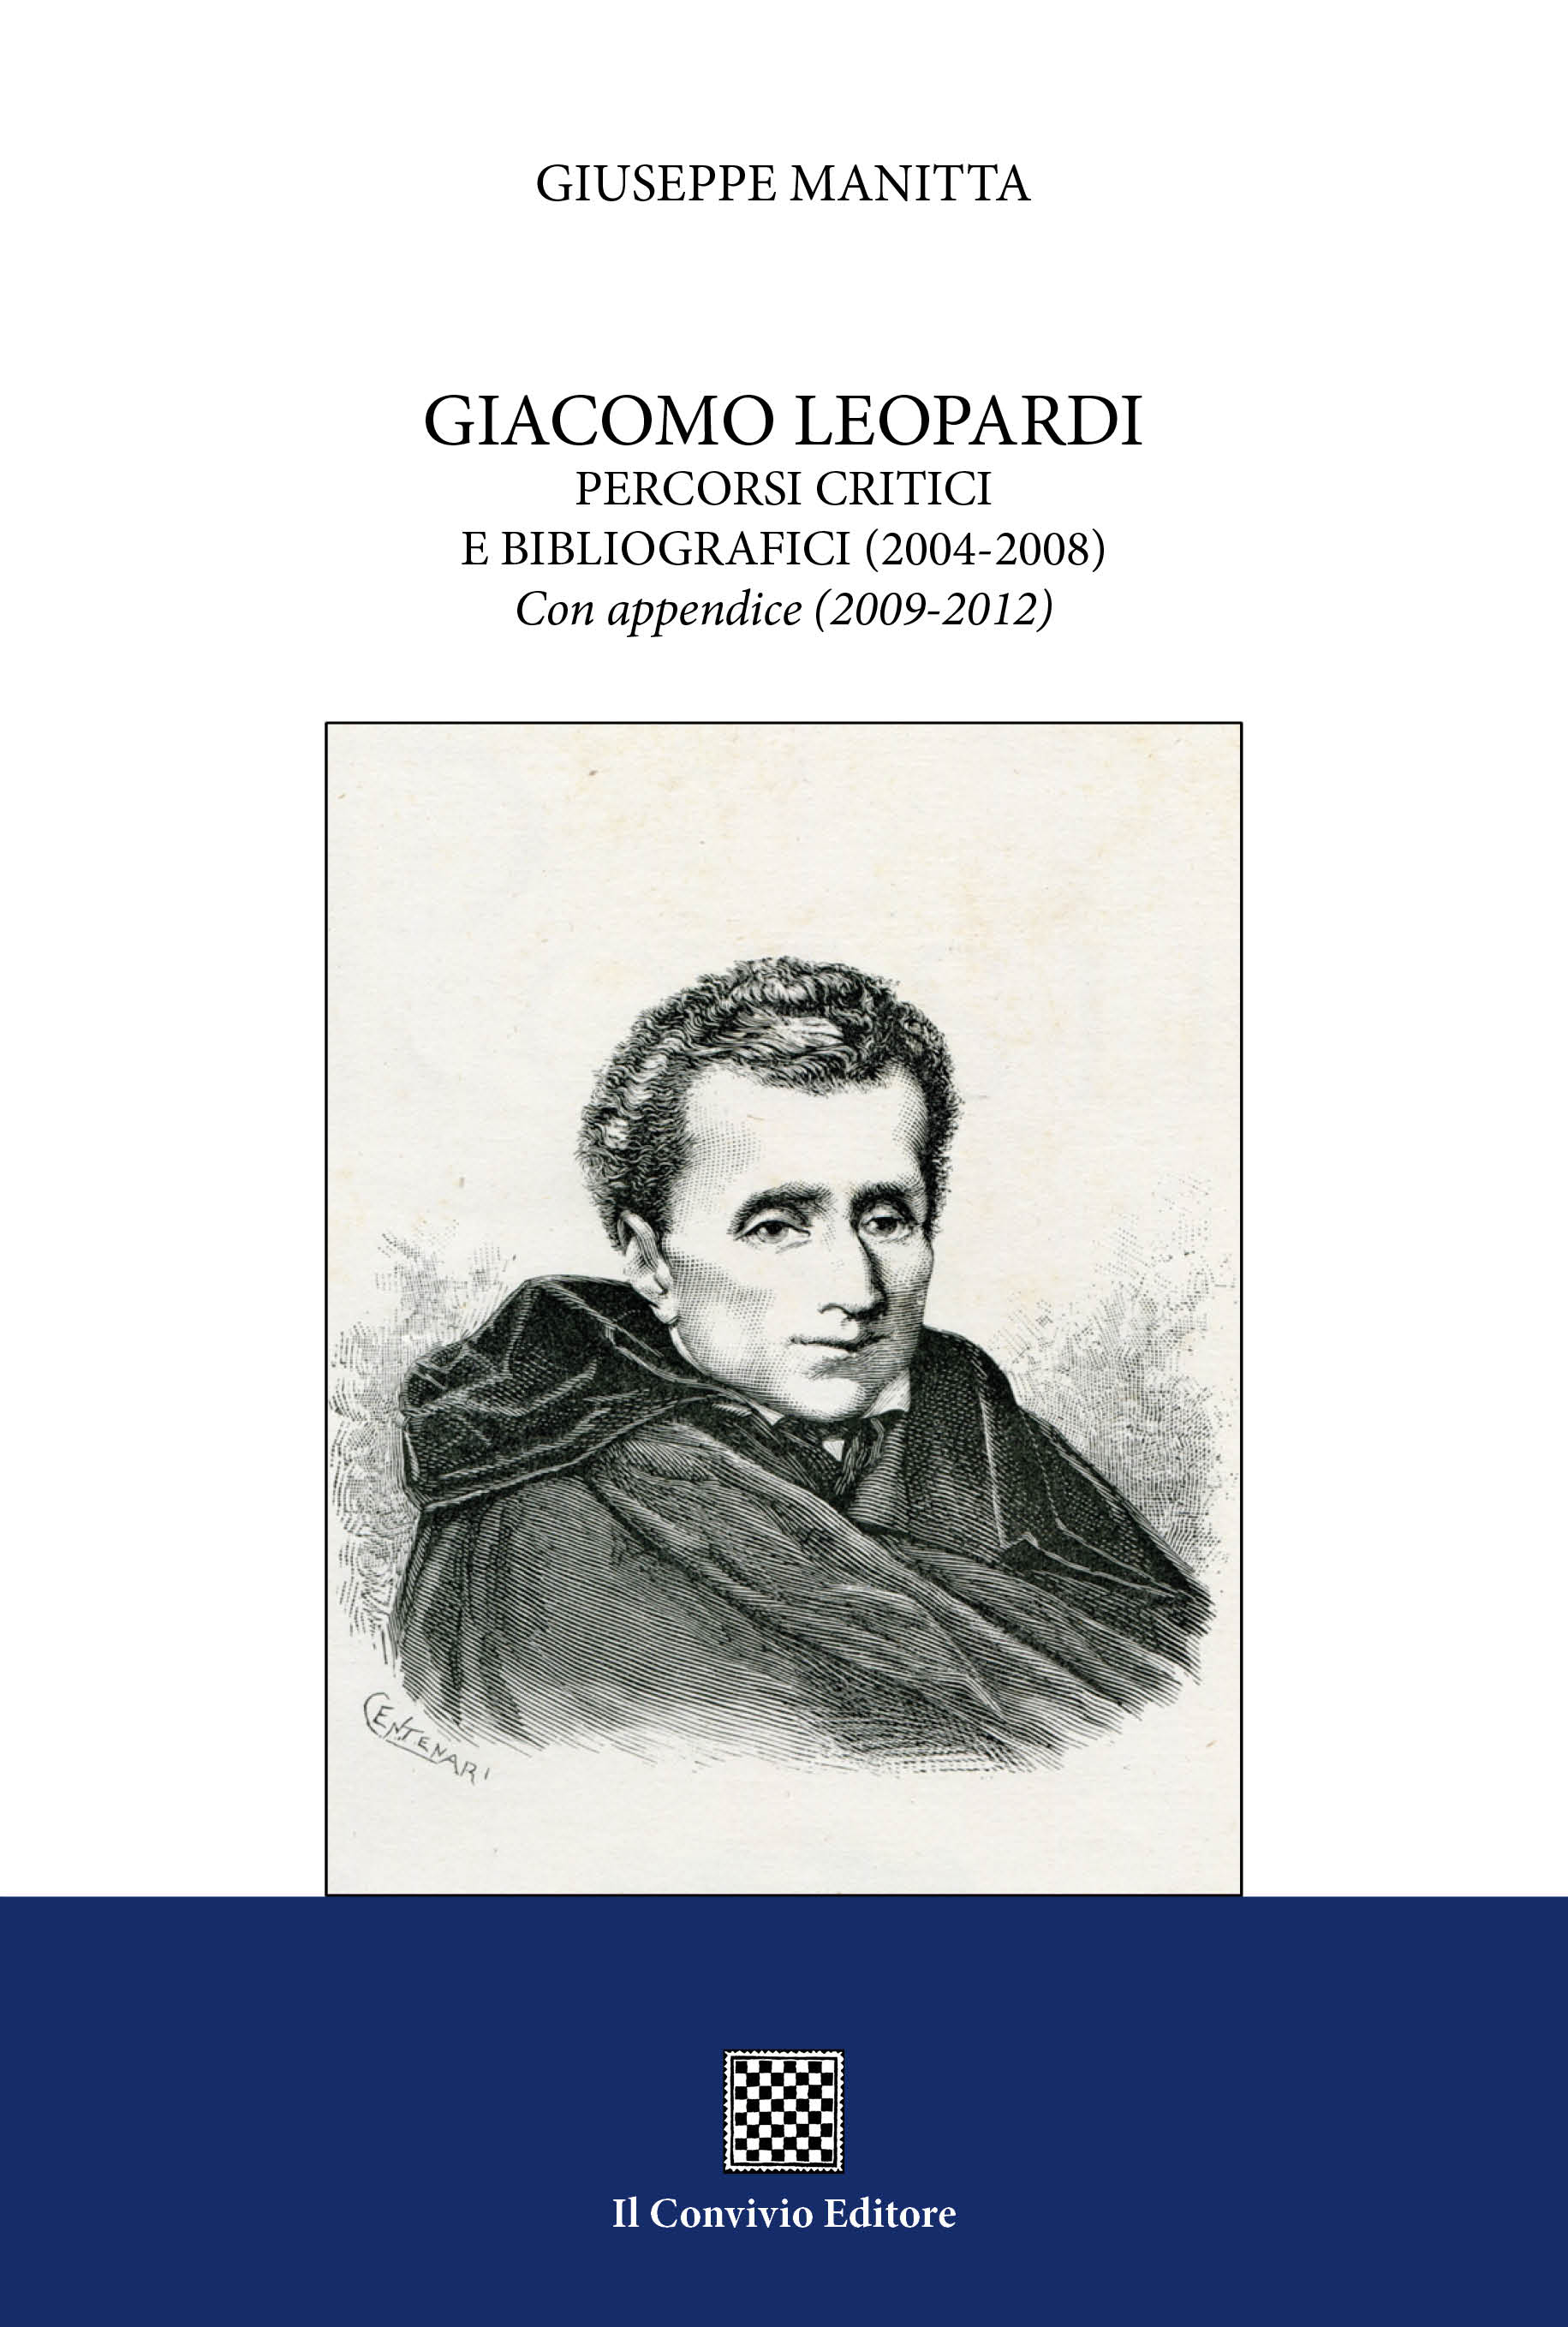 Copertina di Giacomo Leopardi. Percorsi critici e bibliografici (2004-2008). Con appendice (2009-2012)